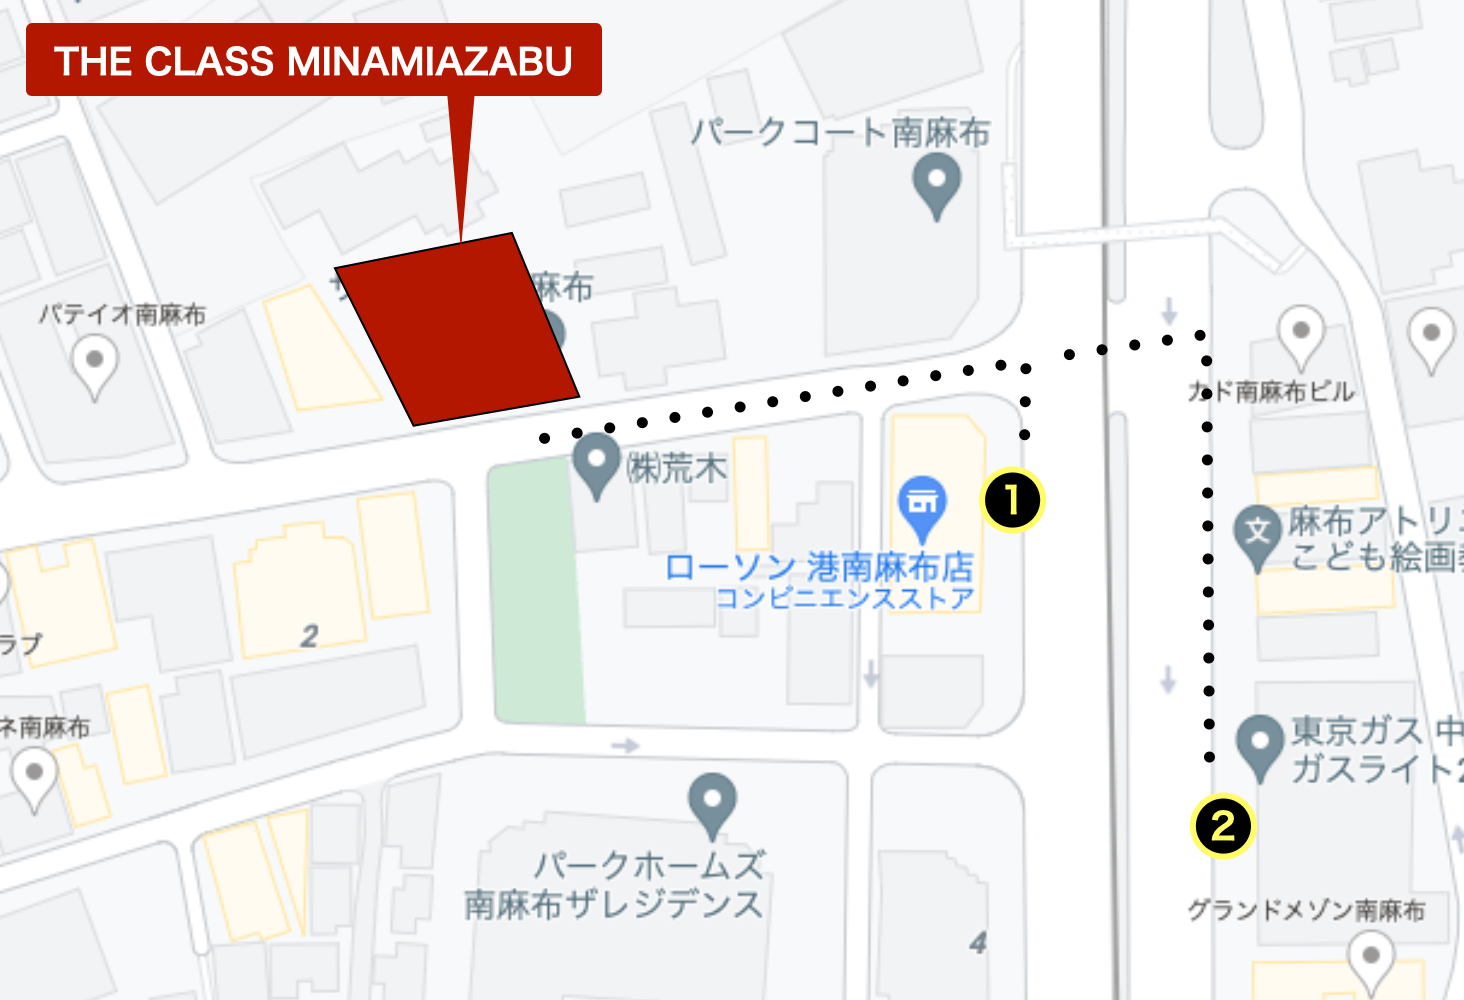 マンション周辺のバス停を示したマップ